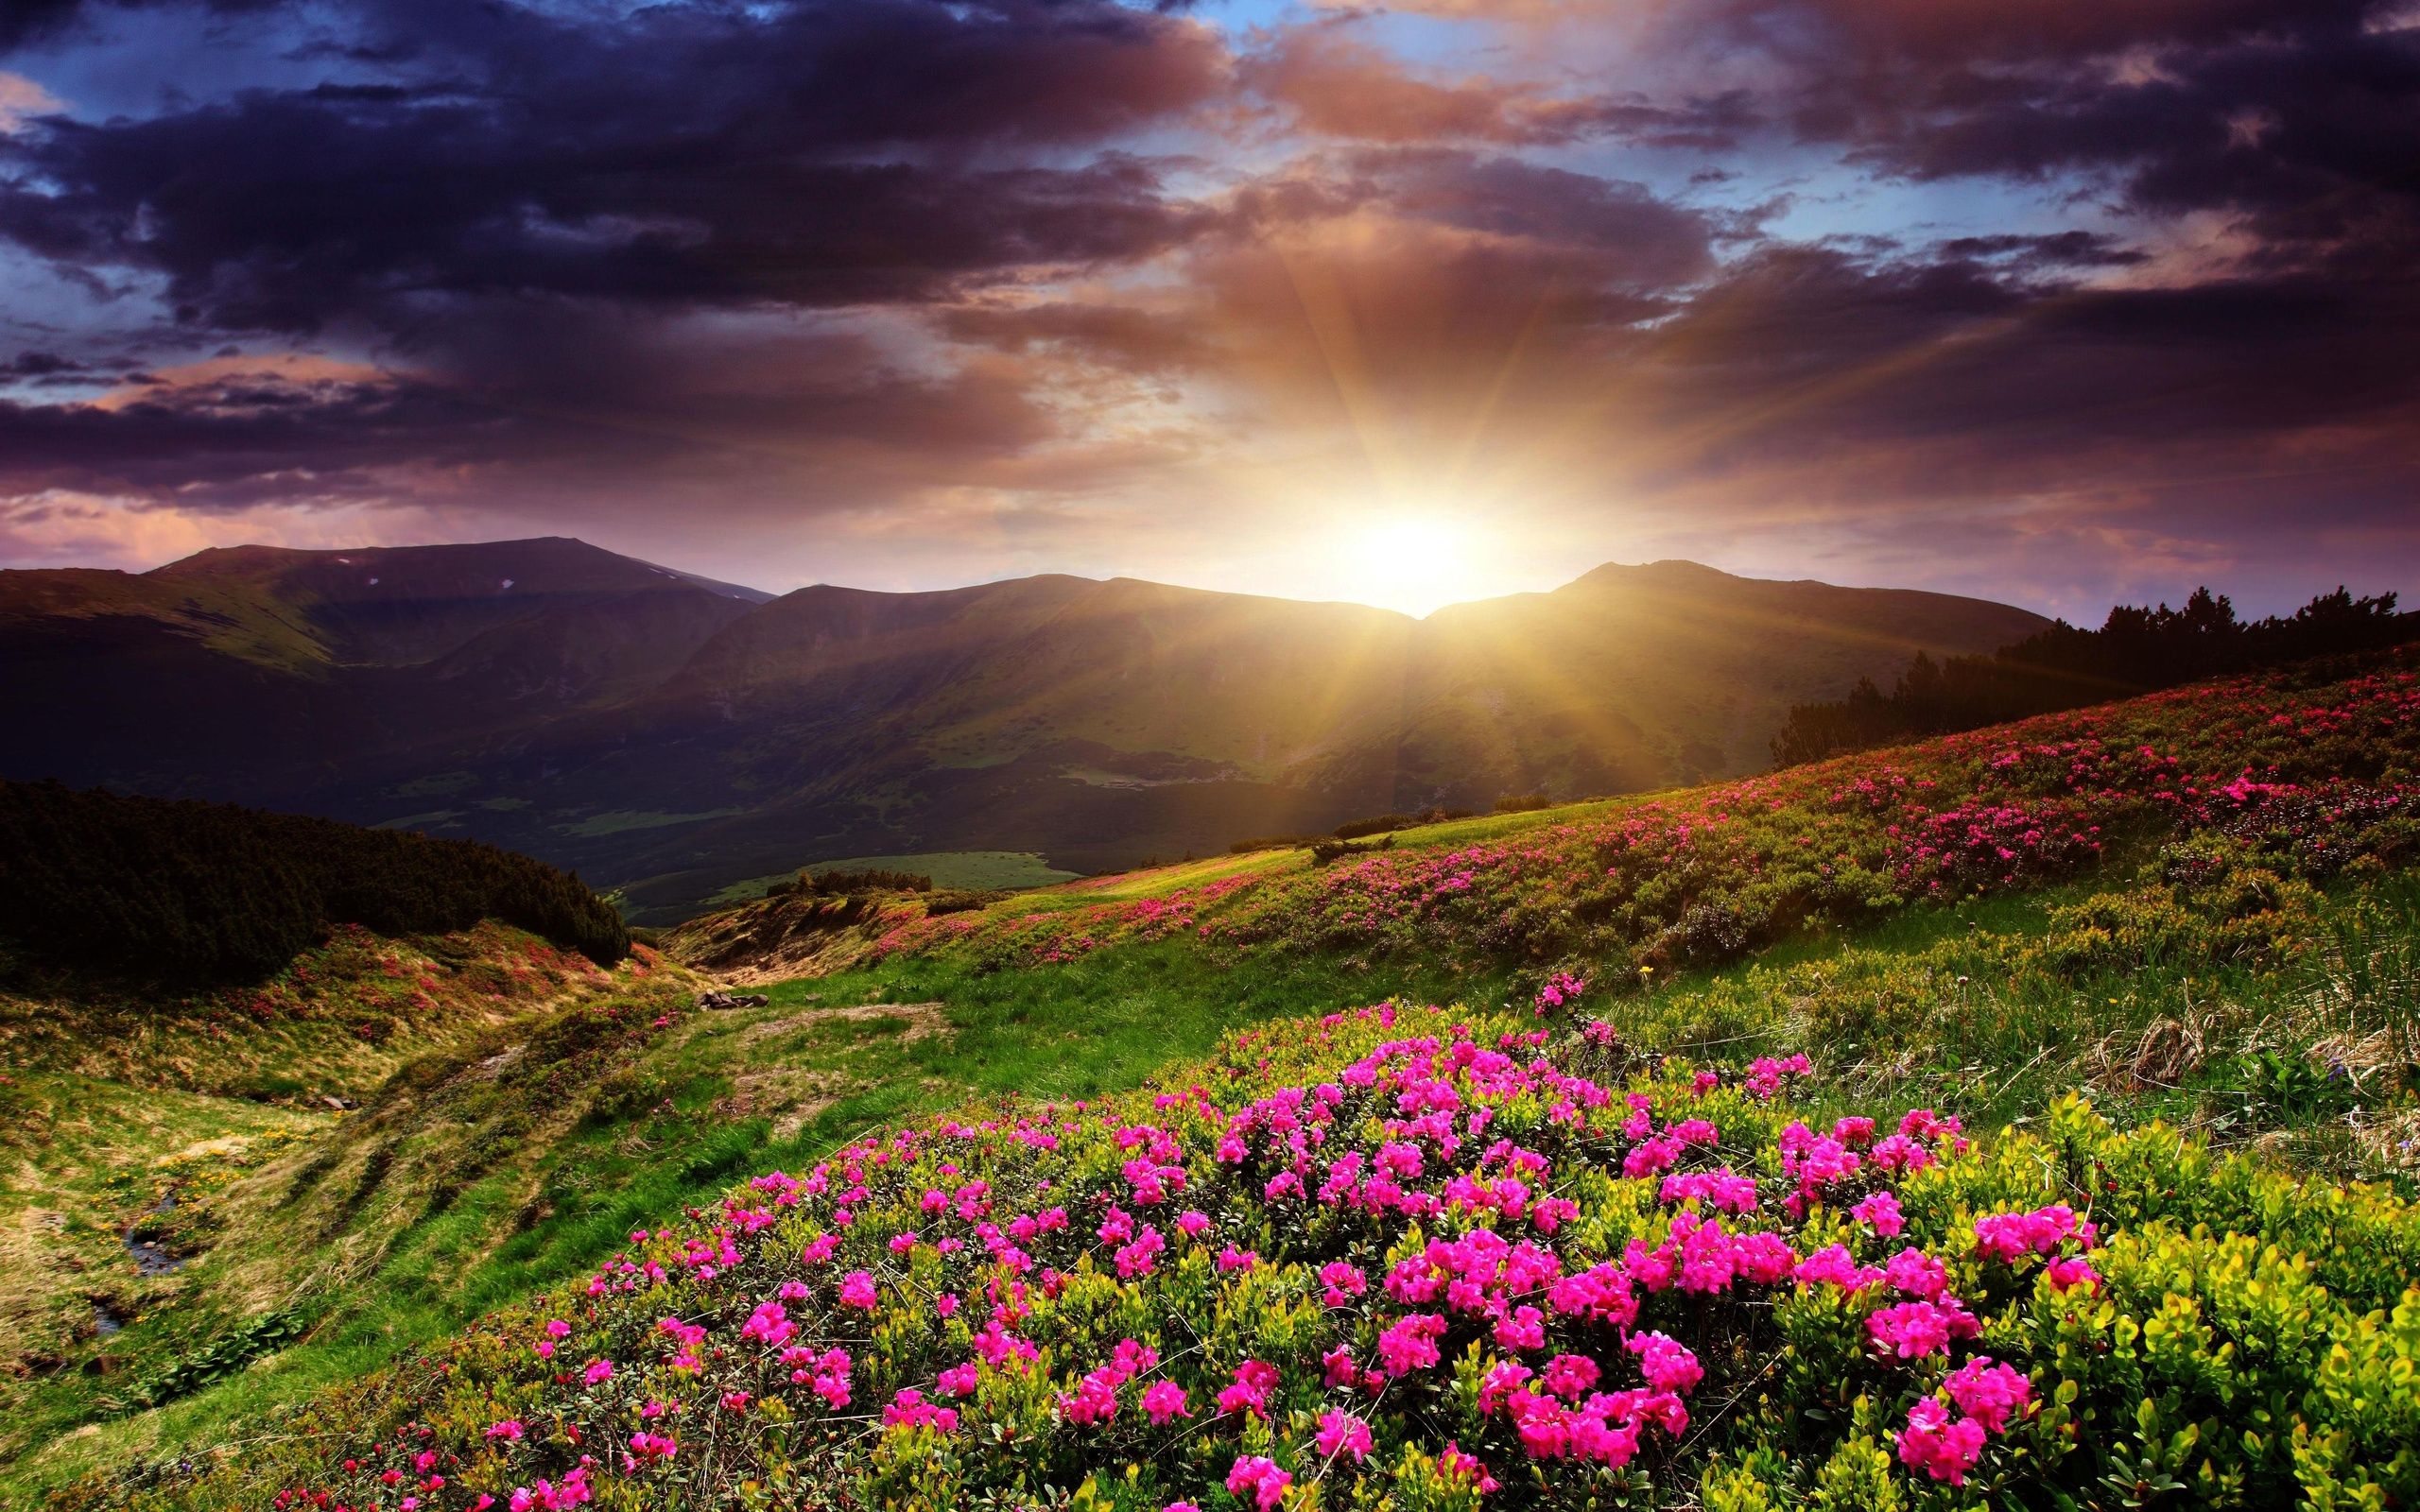 Hình ảnh miễn phí: mặt trời mọc, reed cỏ, ánh sáng mặt trời, cỏ, cảnh, bình  minh, mặt trời, bầu trời, thiên nhiên